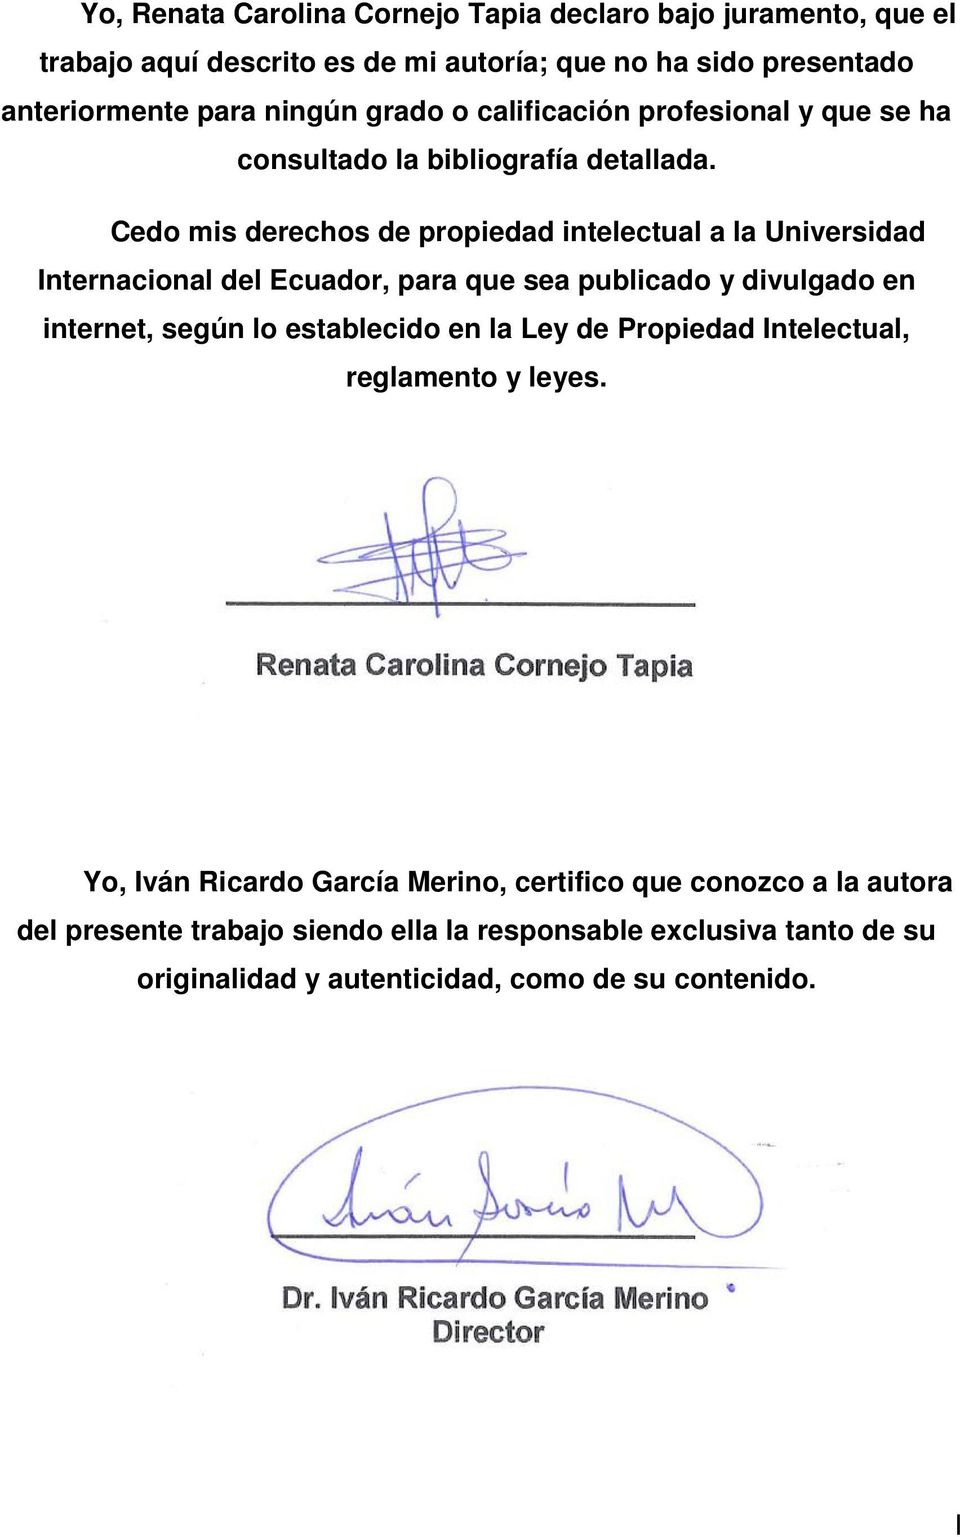 Cedo mis derechos de propiedad intelectual a la Universidad Internacional del Ecuador, para que sea publicado y divulgado en internet, según lo establecido en